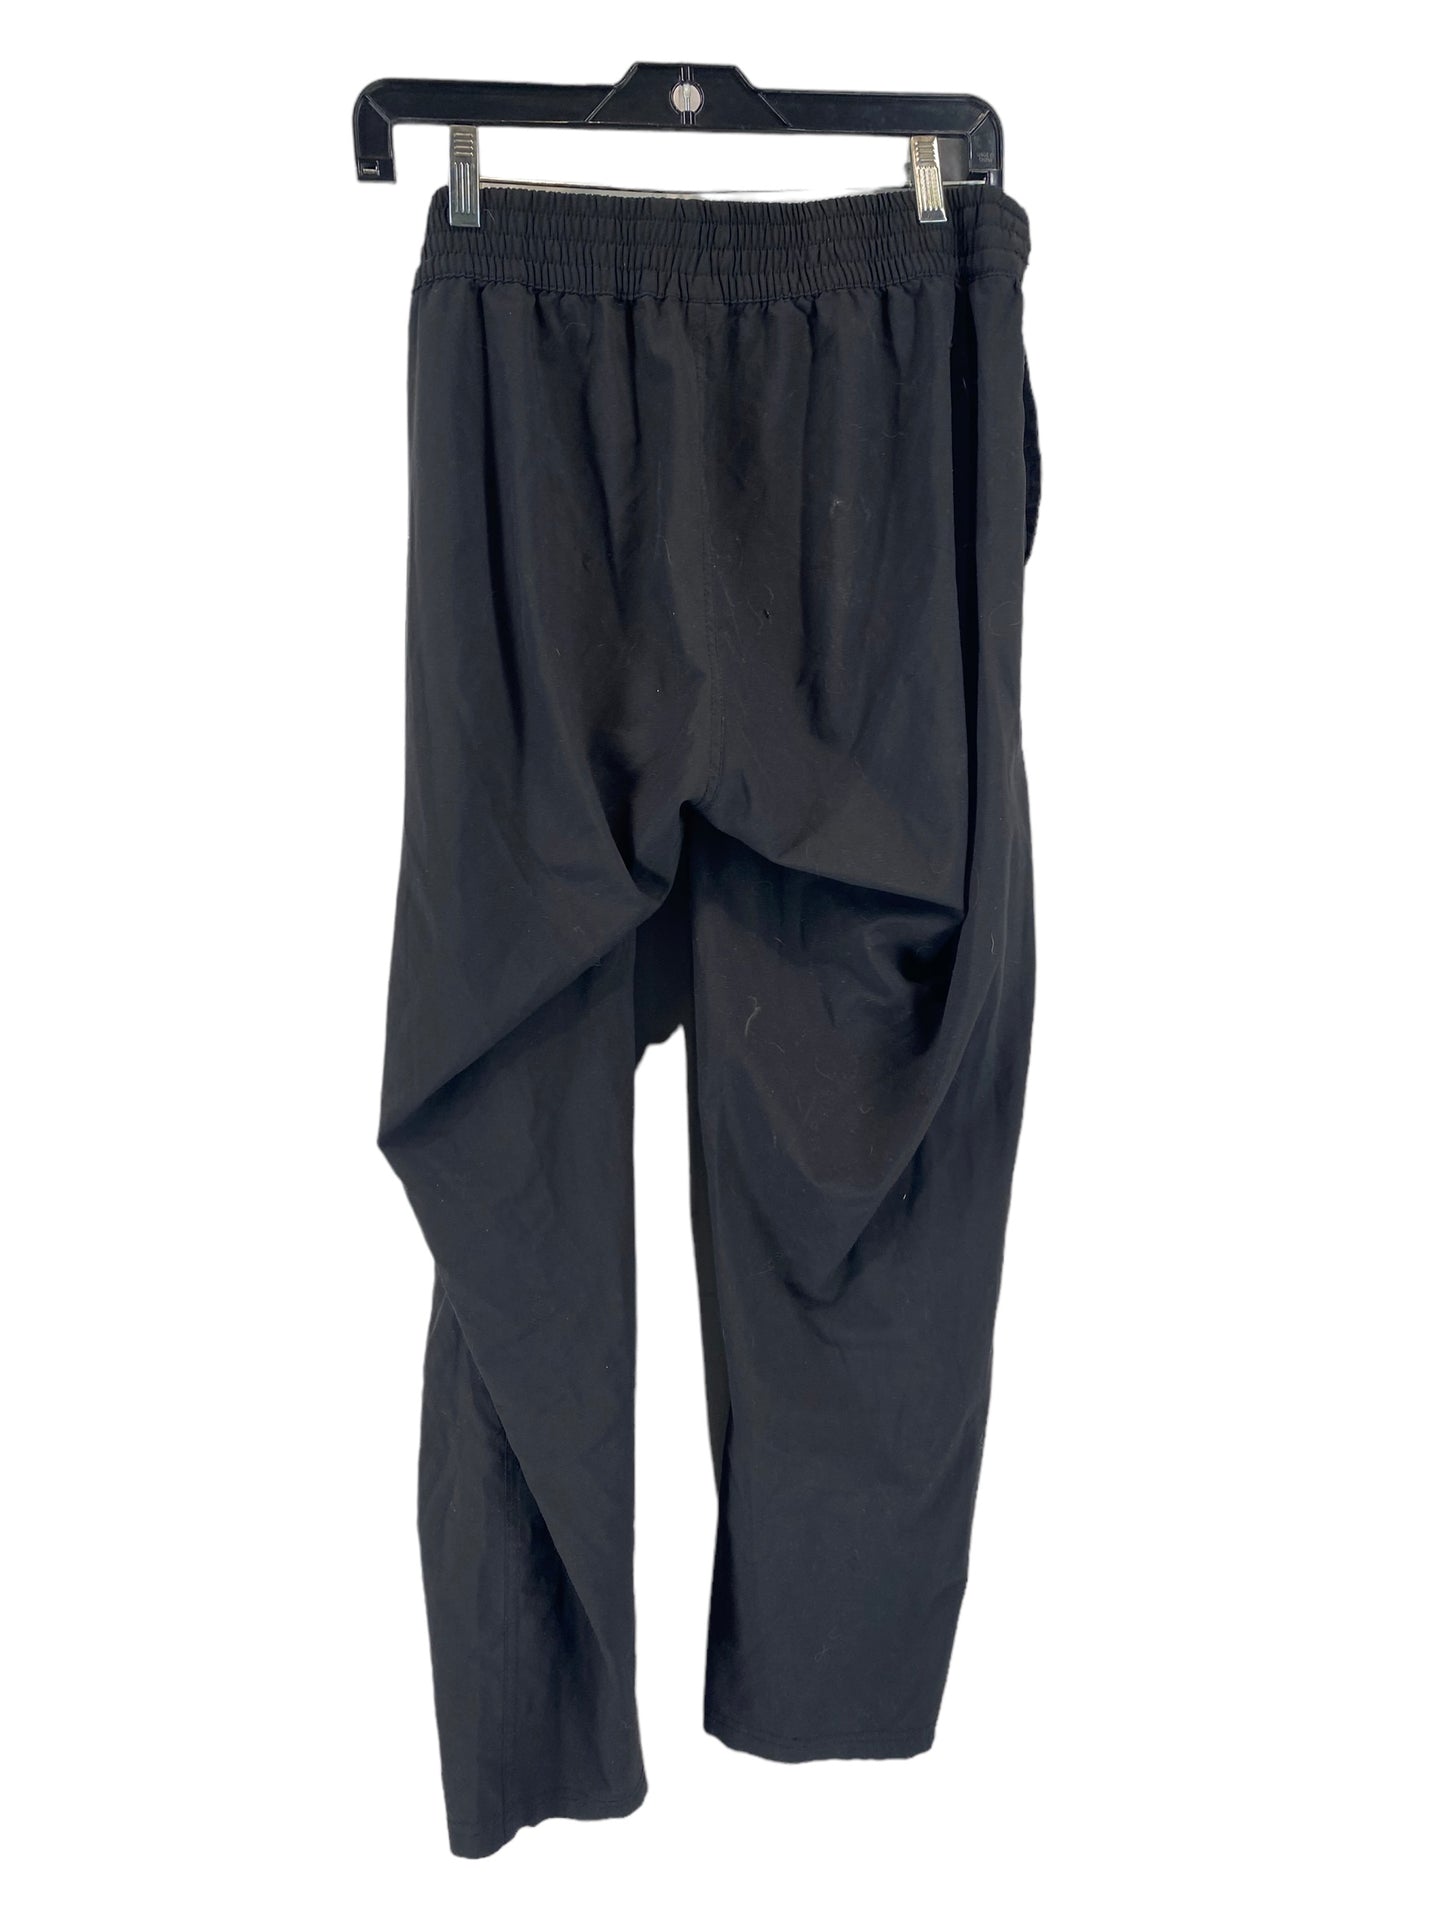 Athletic Pants By Mono B  Size: L